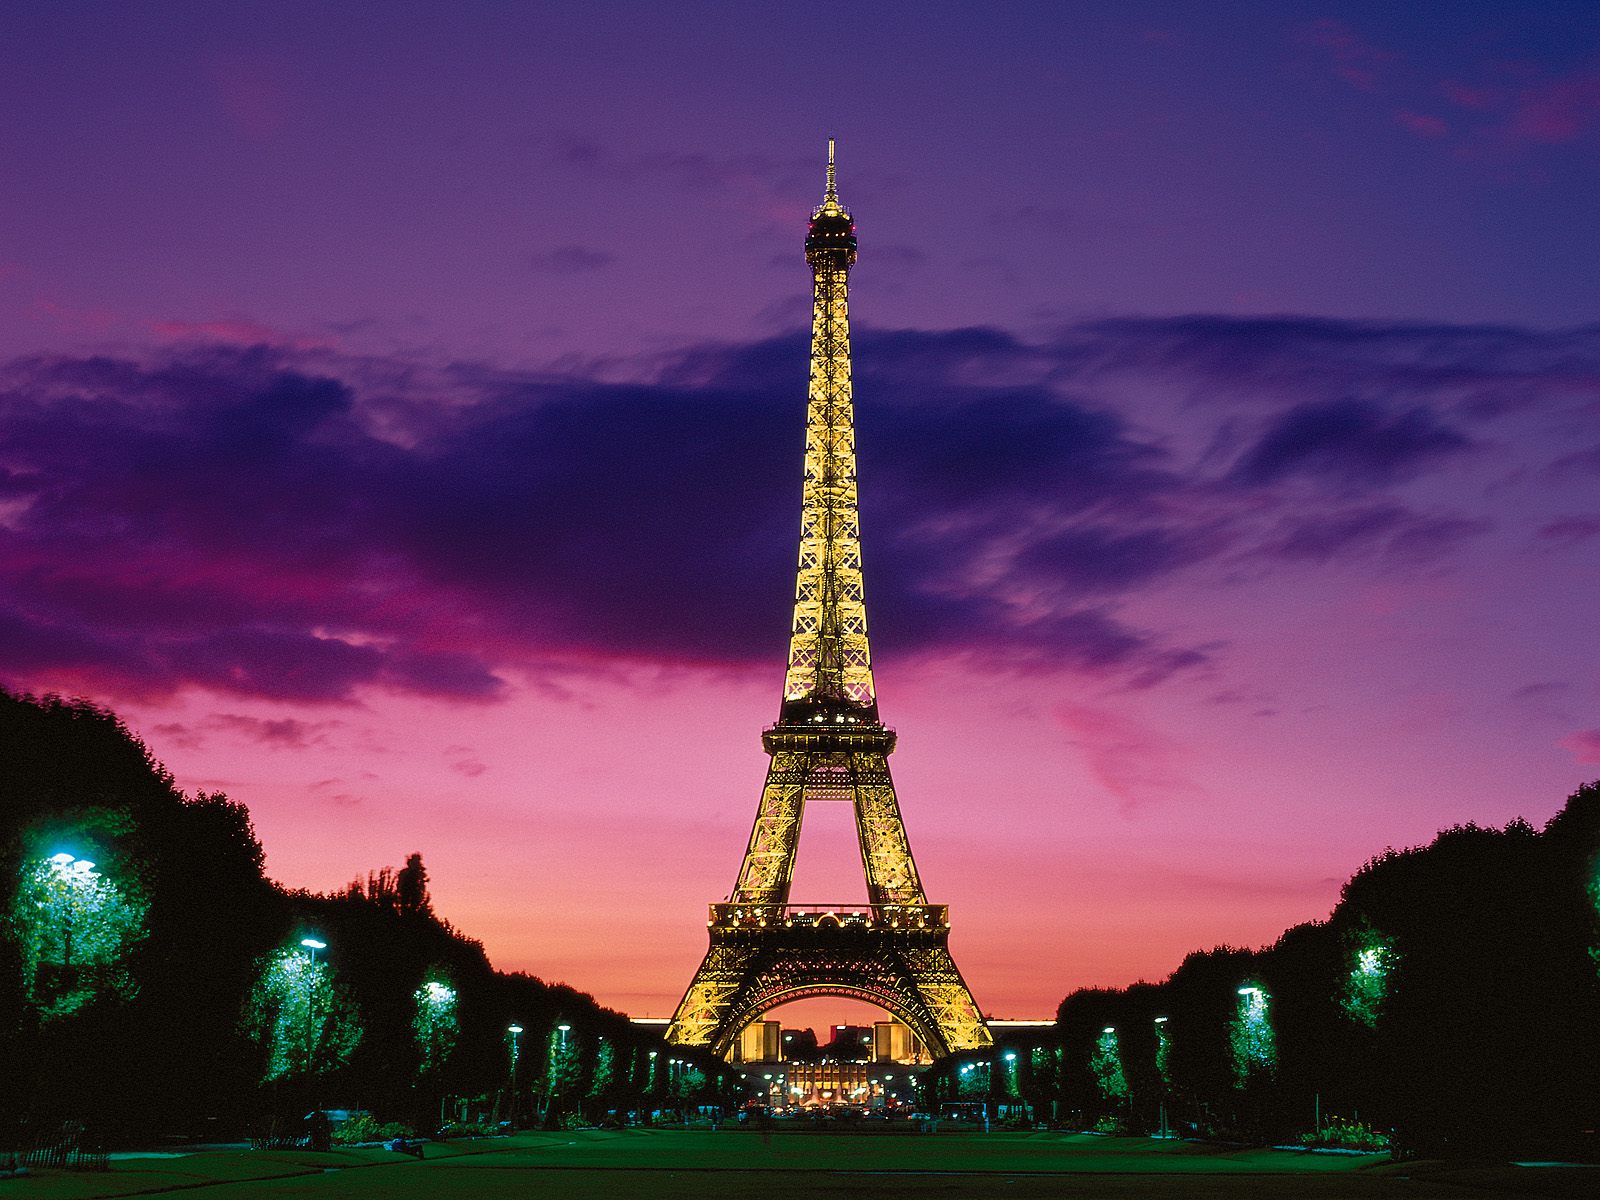 Nền Cảnh đẹp Của Tháp Eiffel Nổi Tiếng ở Paris Hình Chụp Và Hình ảnh Để Tải  Về Miễn Phí  Pngtree